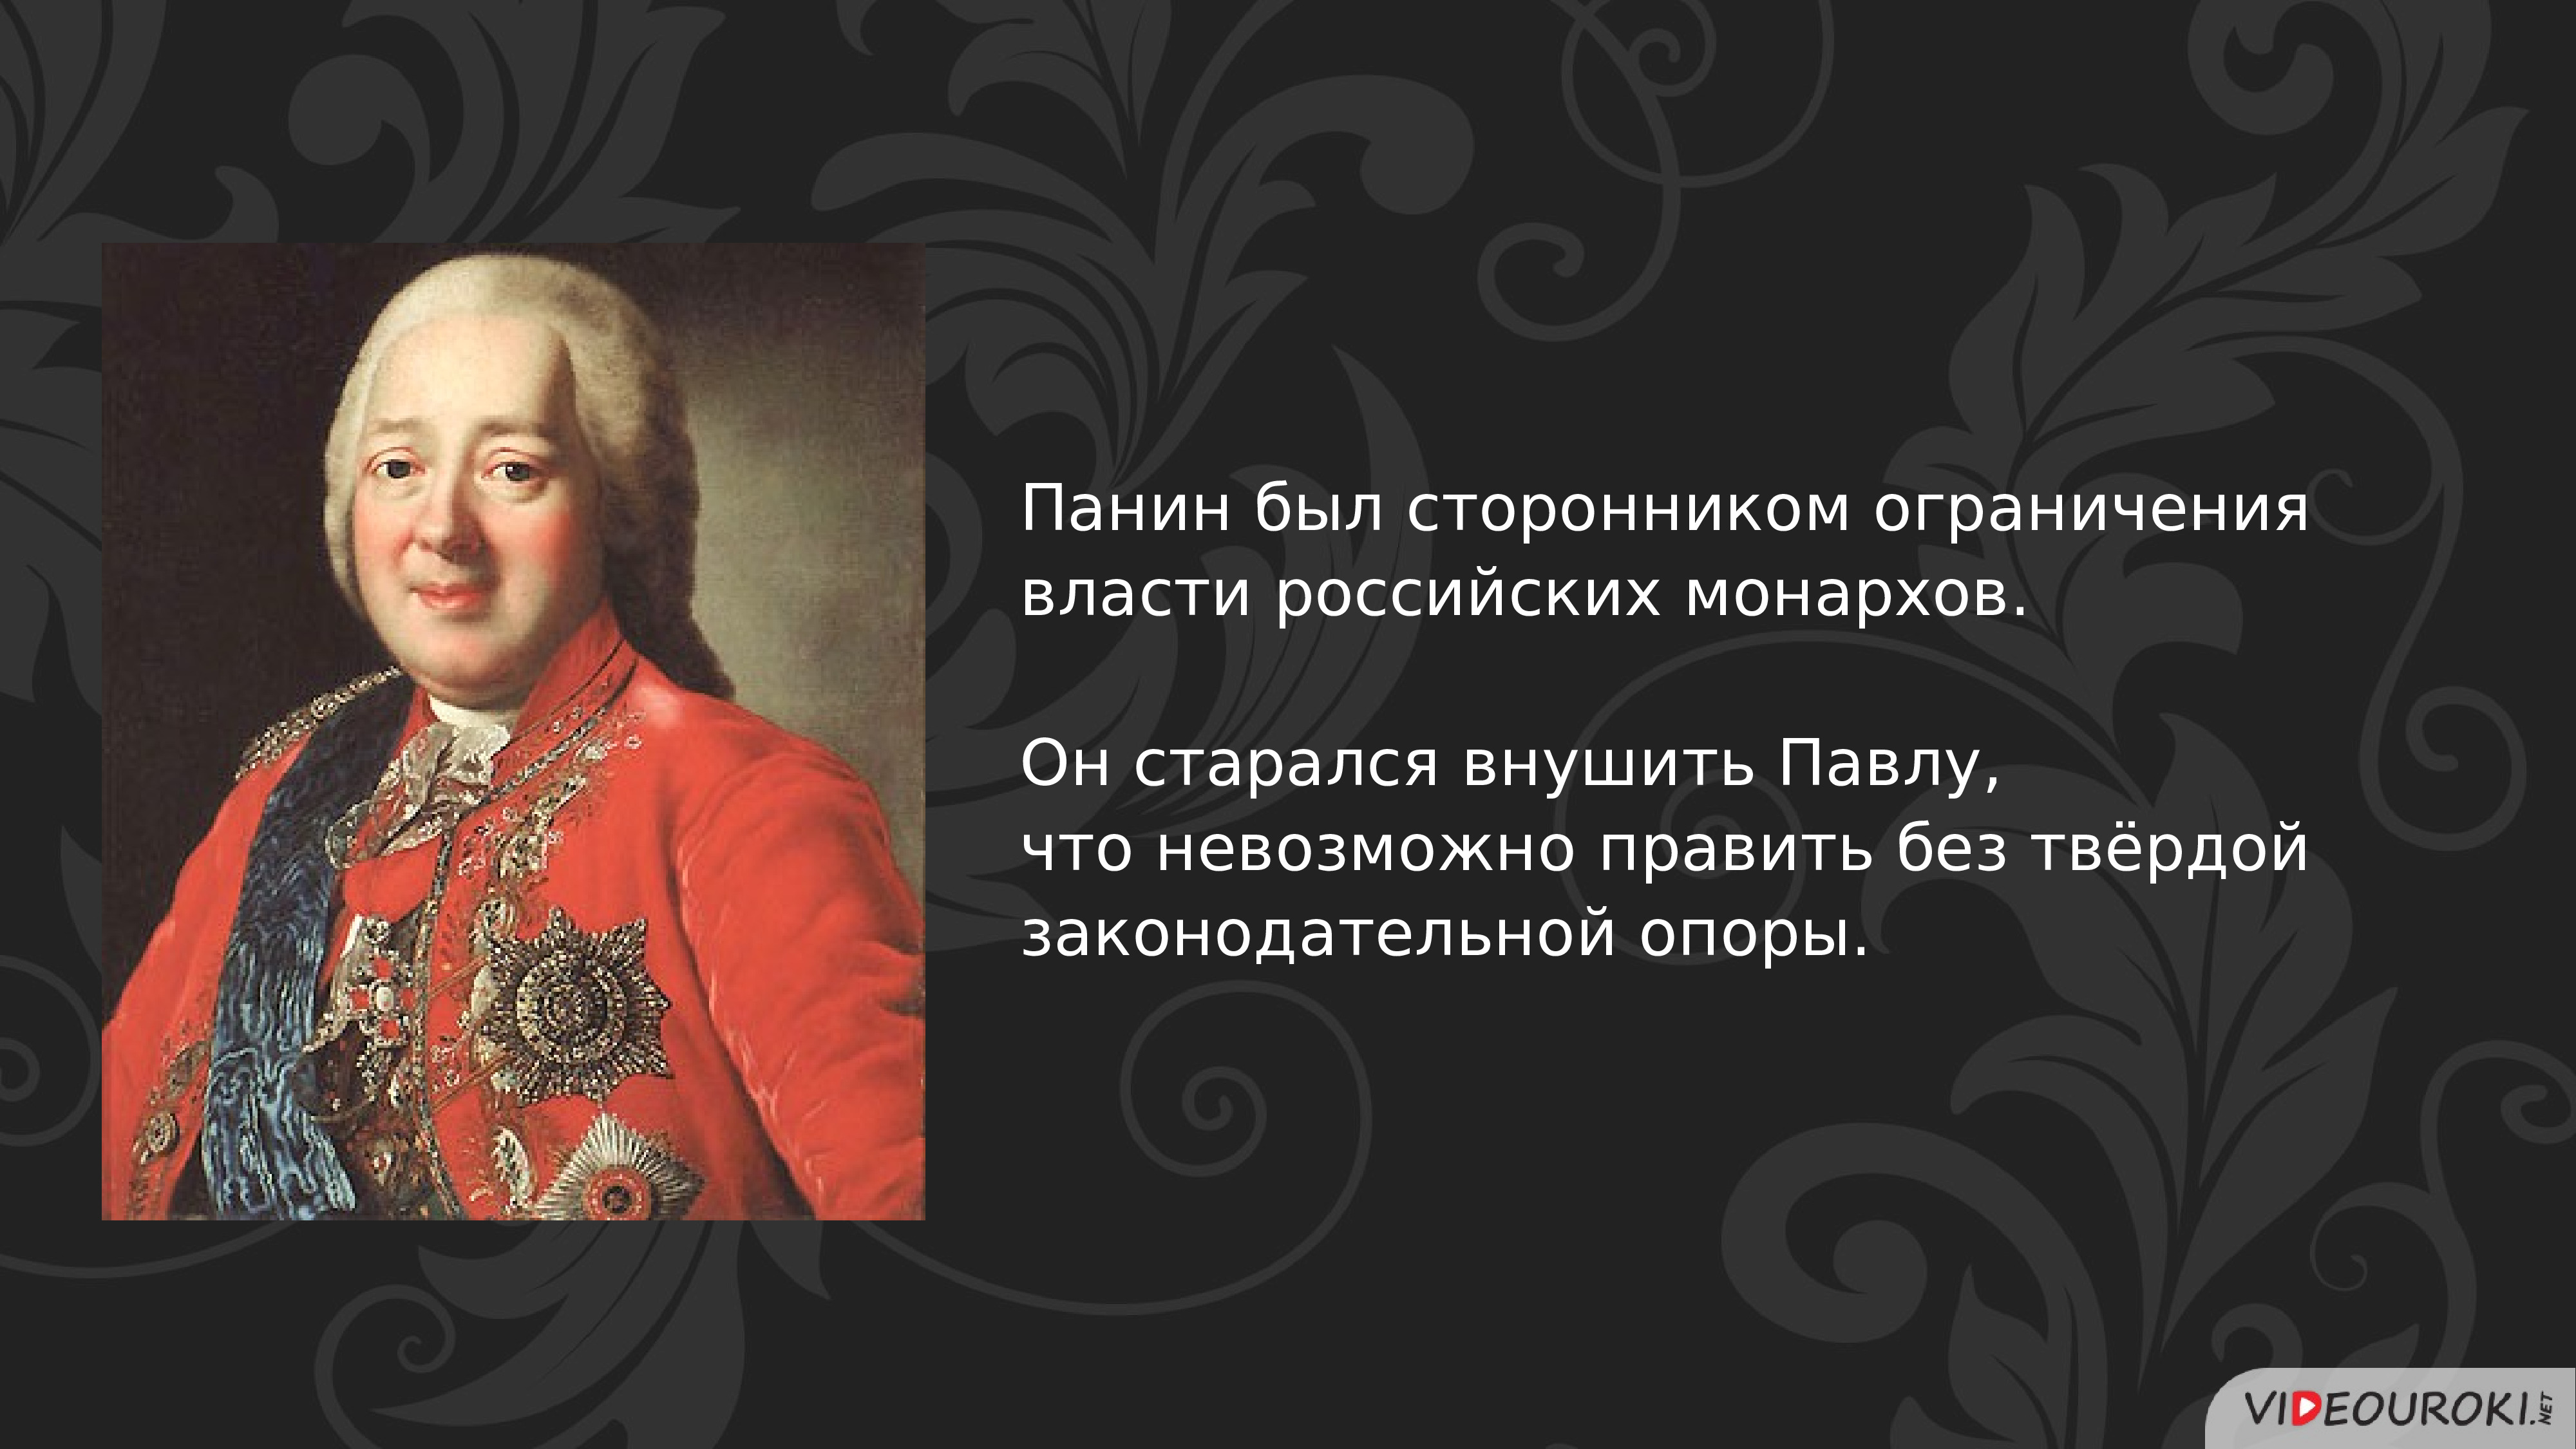 Автор ниспослания российского монарха. Назовите российского монарха правившего